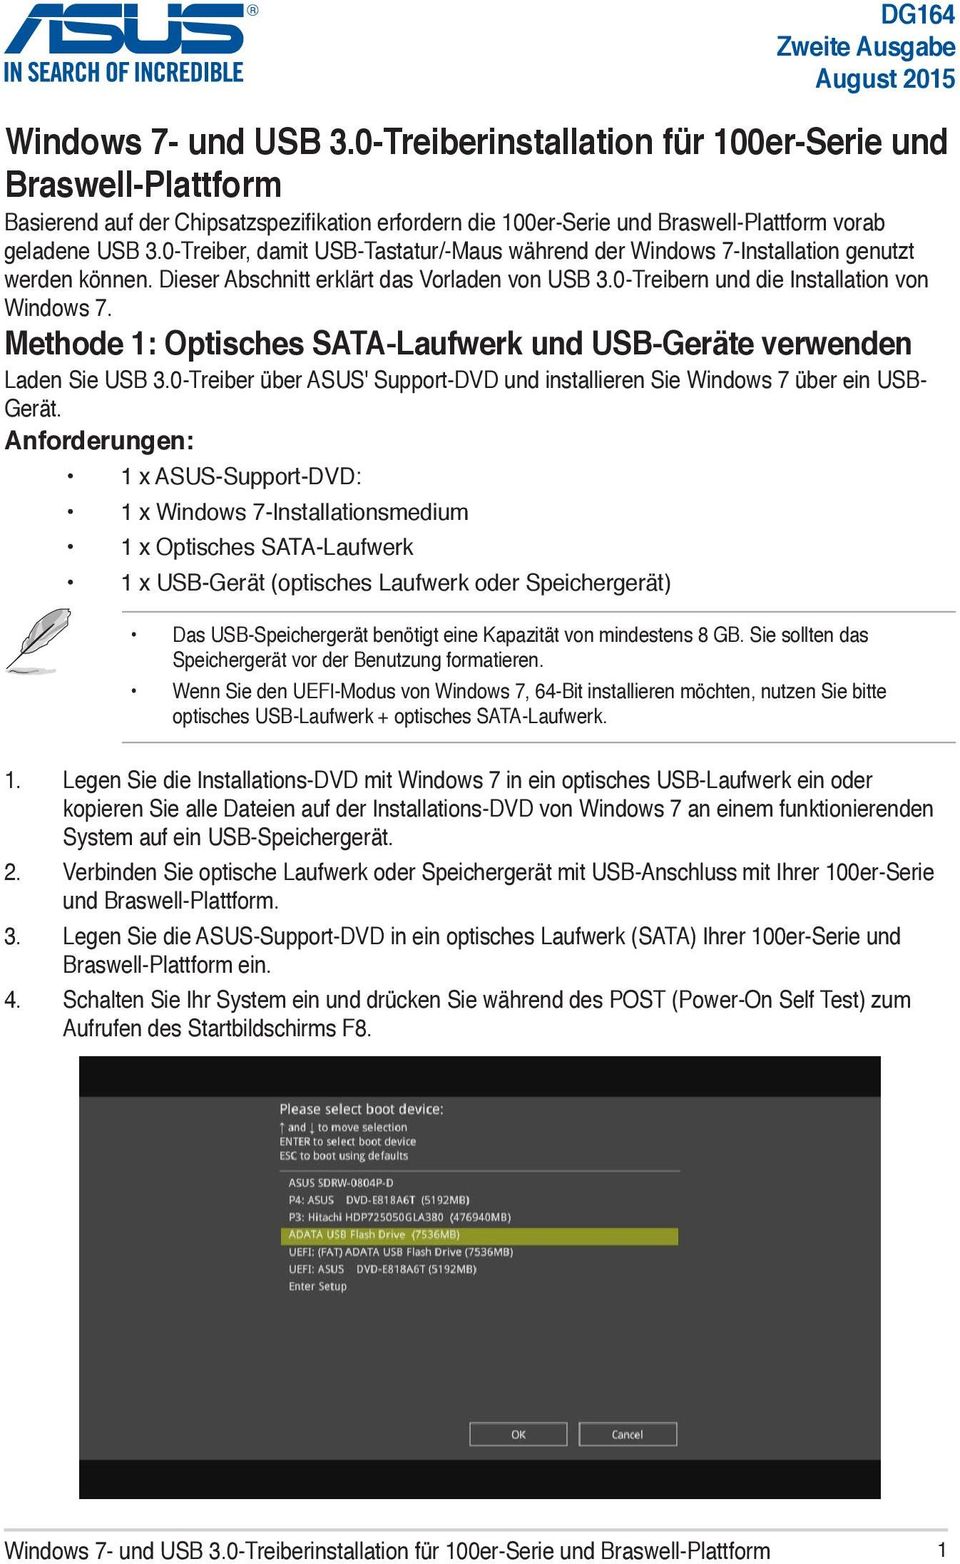 0-Treiber, damit USB-Tastatur/-Maus während der Windows 7-Installation genutzt werden können. Dieser Abschnitt erklärt das Vorladen von USB 3.0-Treibern und die Installation von Windows 7.